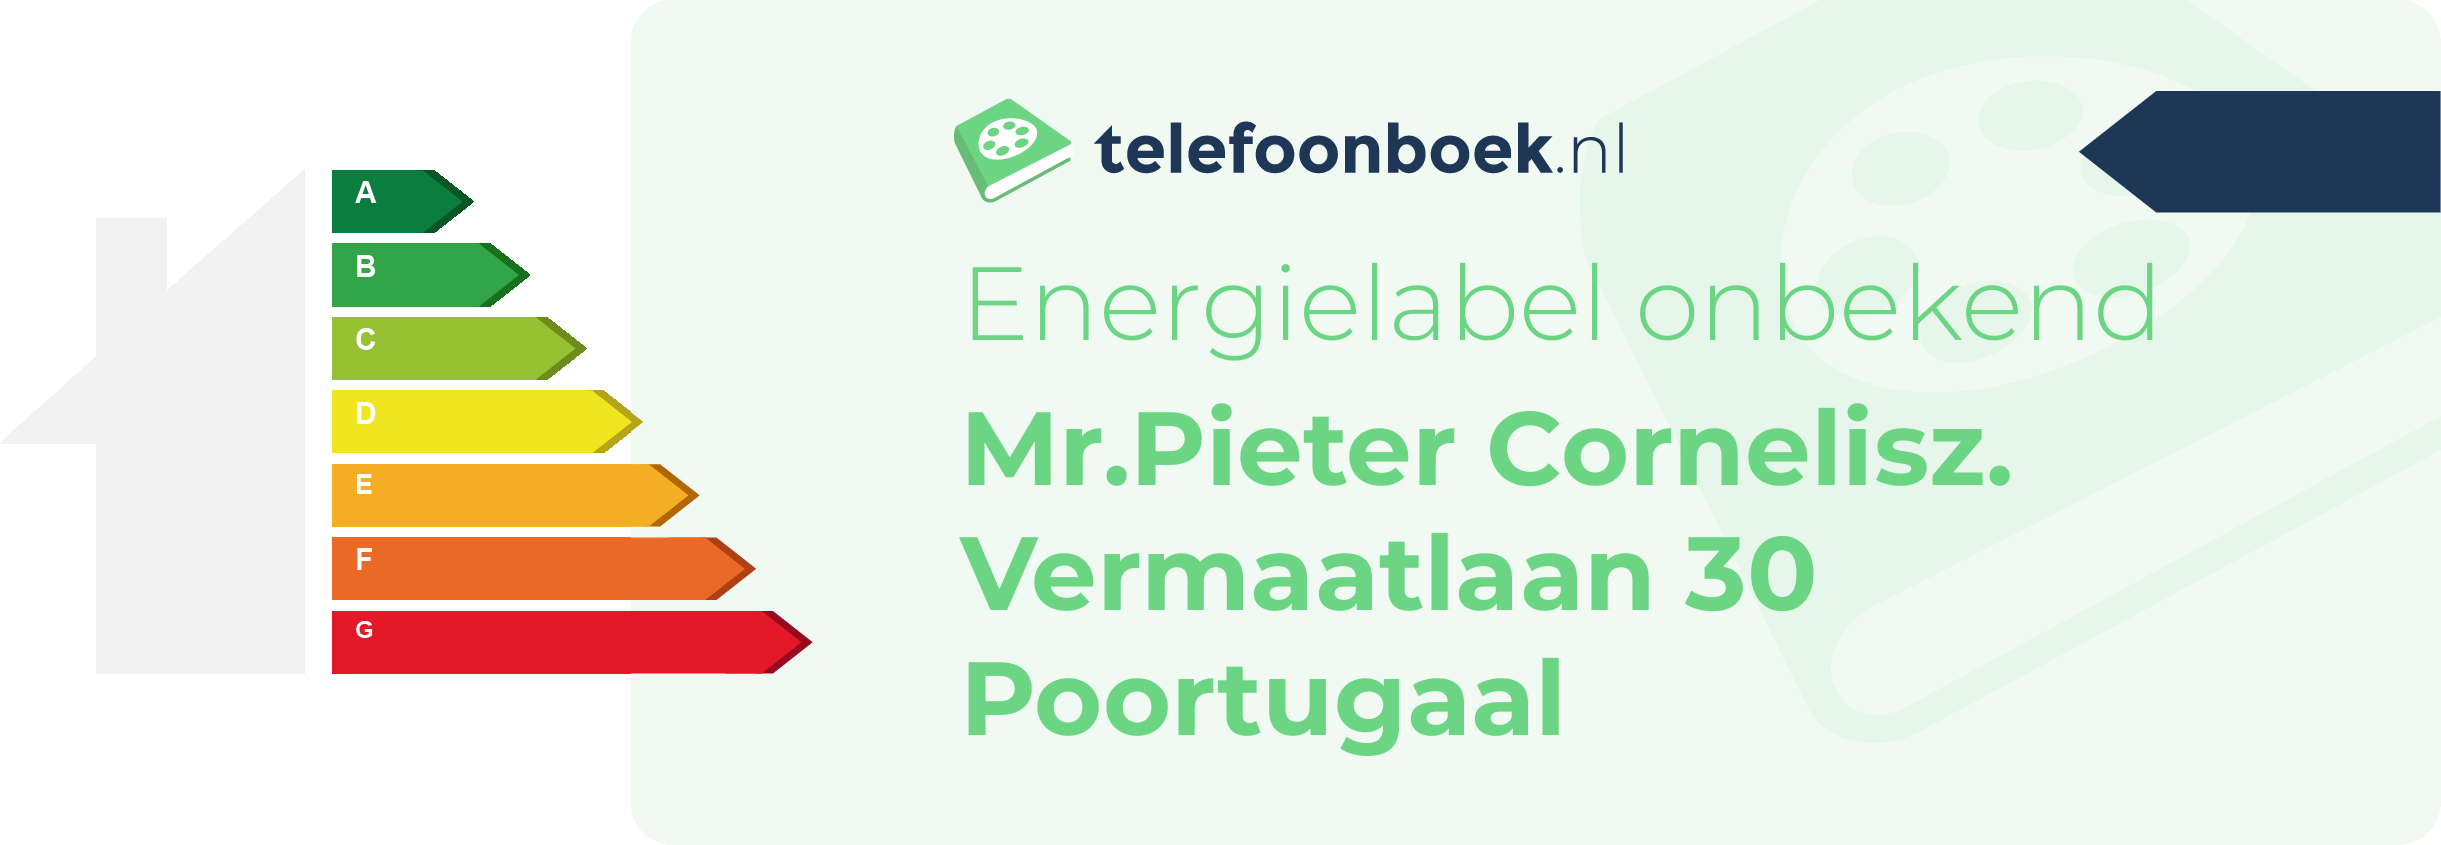 Energielabel Mr.Pieter Cornelisz. Vermaatlaan 30 Poortugaal